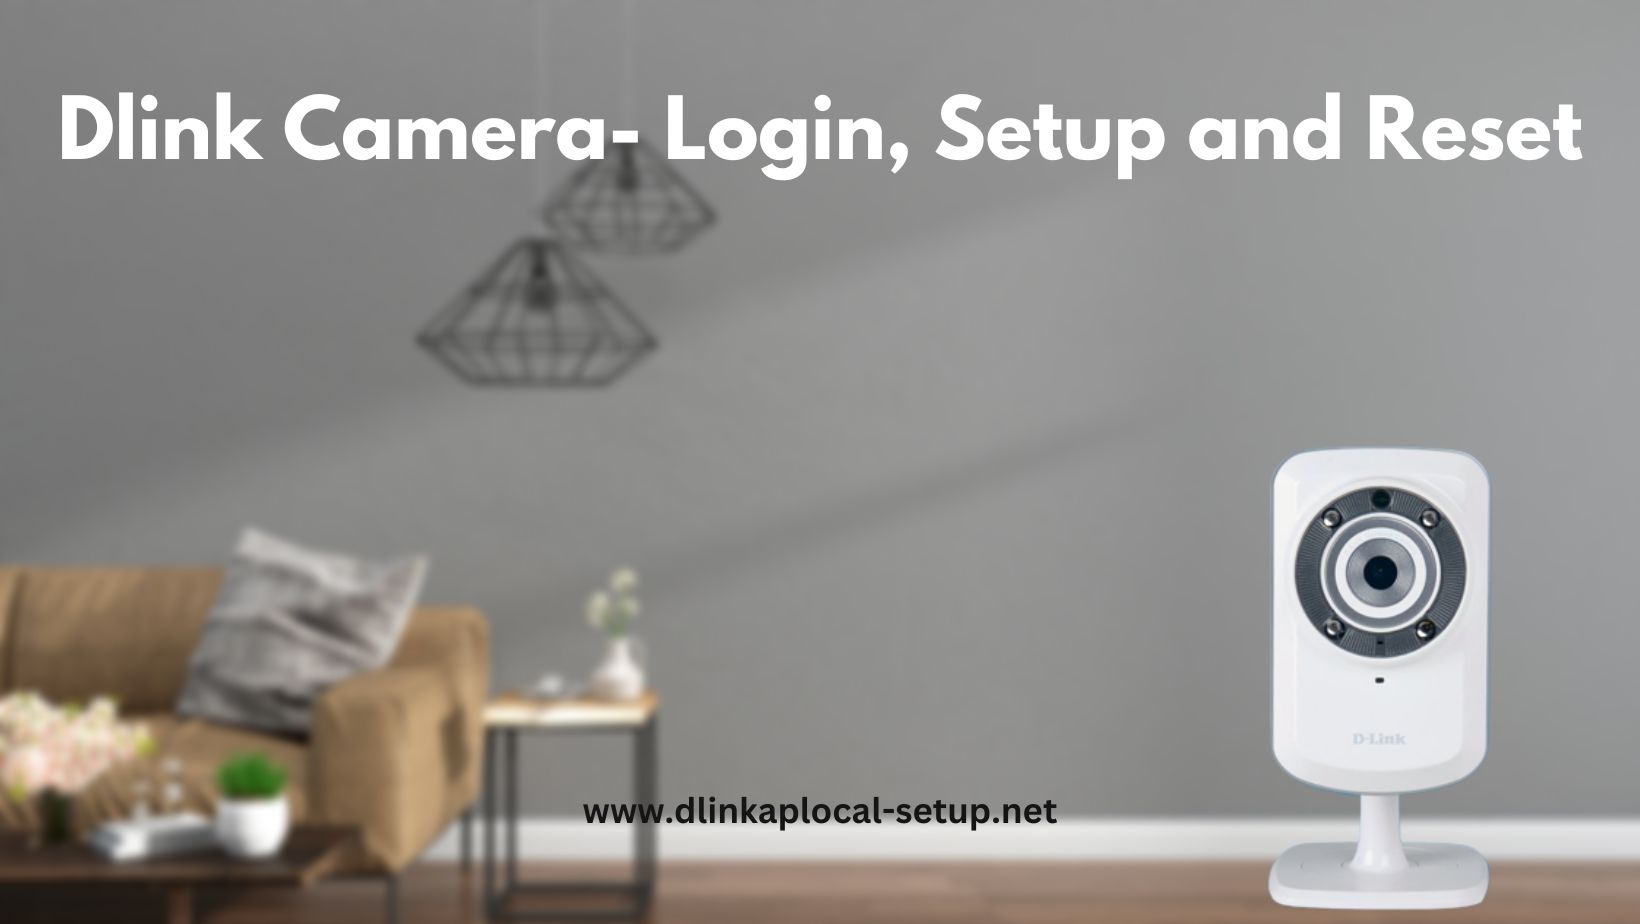 Dlink Camera- Login, Setup and Reset